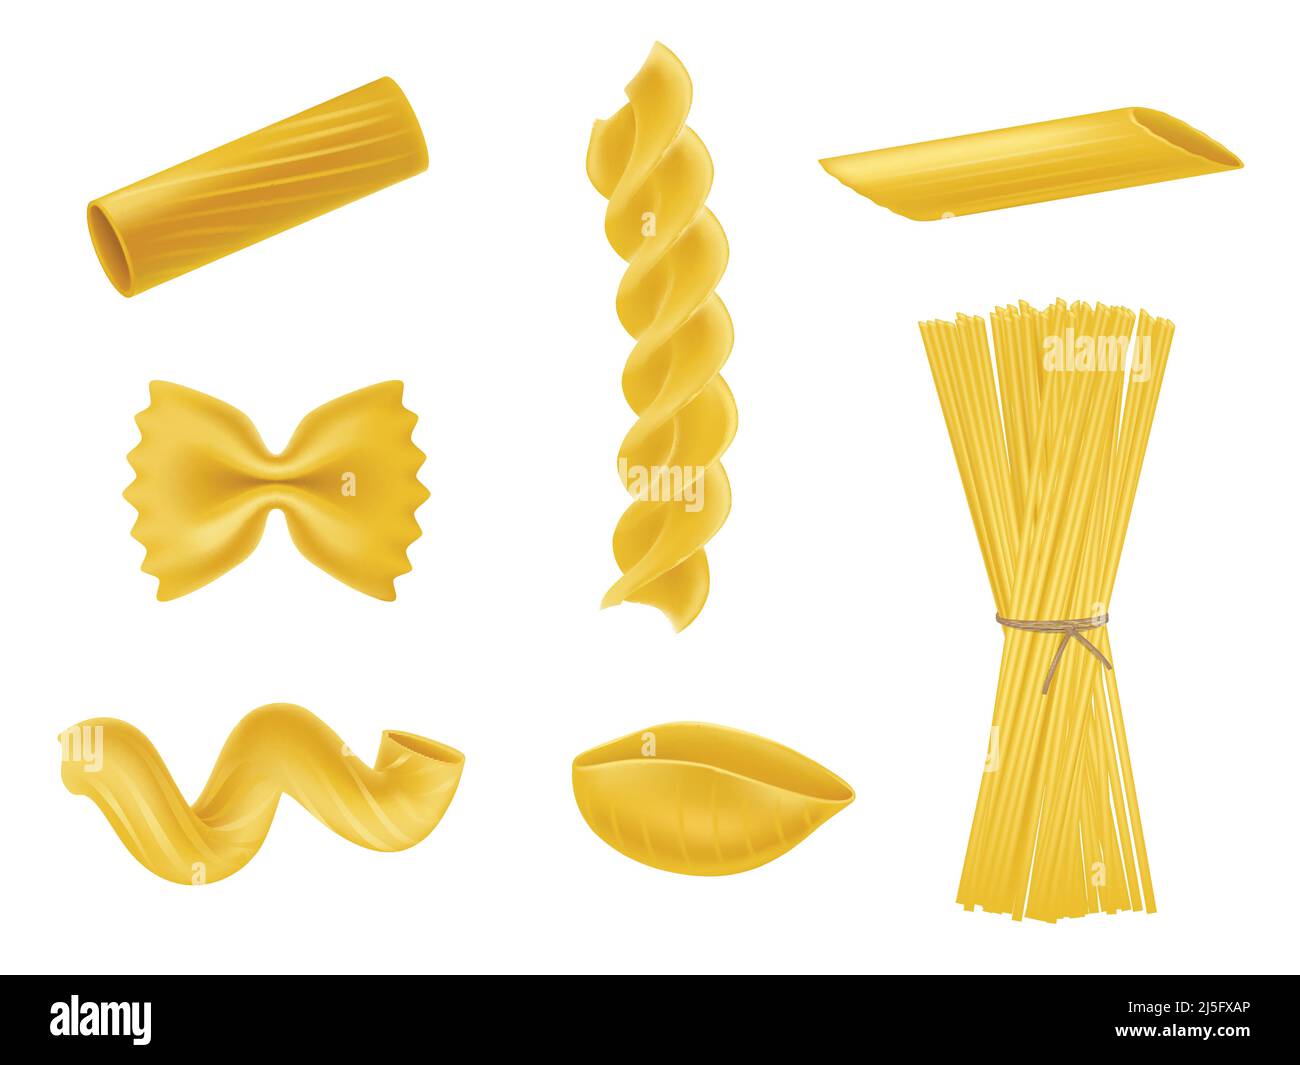 Illustrazione vettoriale insieme di icone realistiche di macaroni secchi di vario genere, pasta, fusilli, rigatoni, farfalle, torsioni, spaghetti, conchiglie isolano Illustrazione Vettoriale